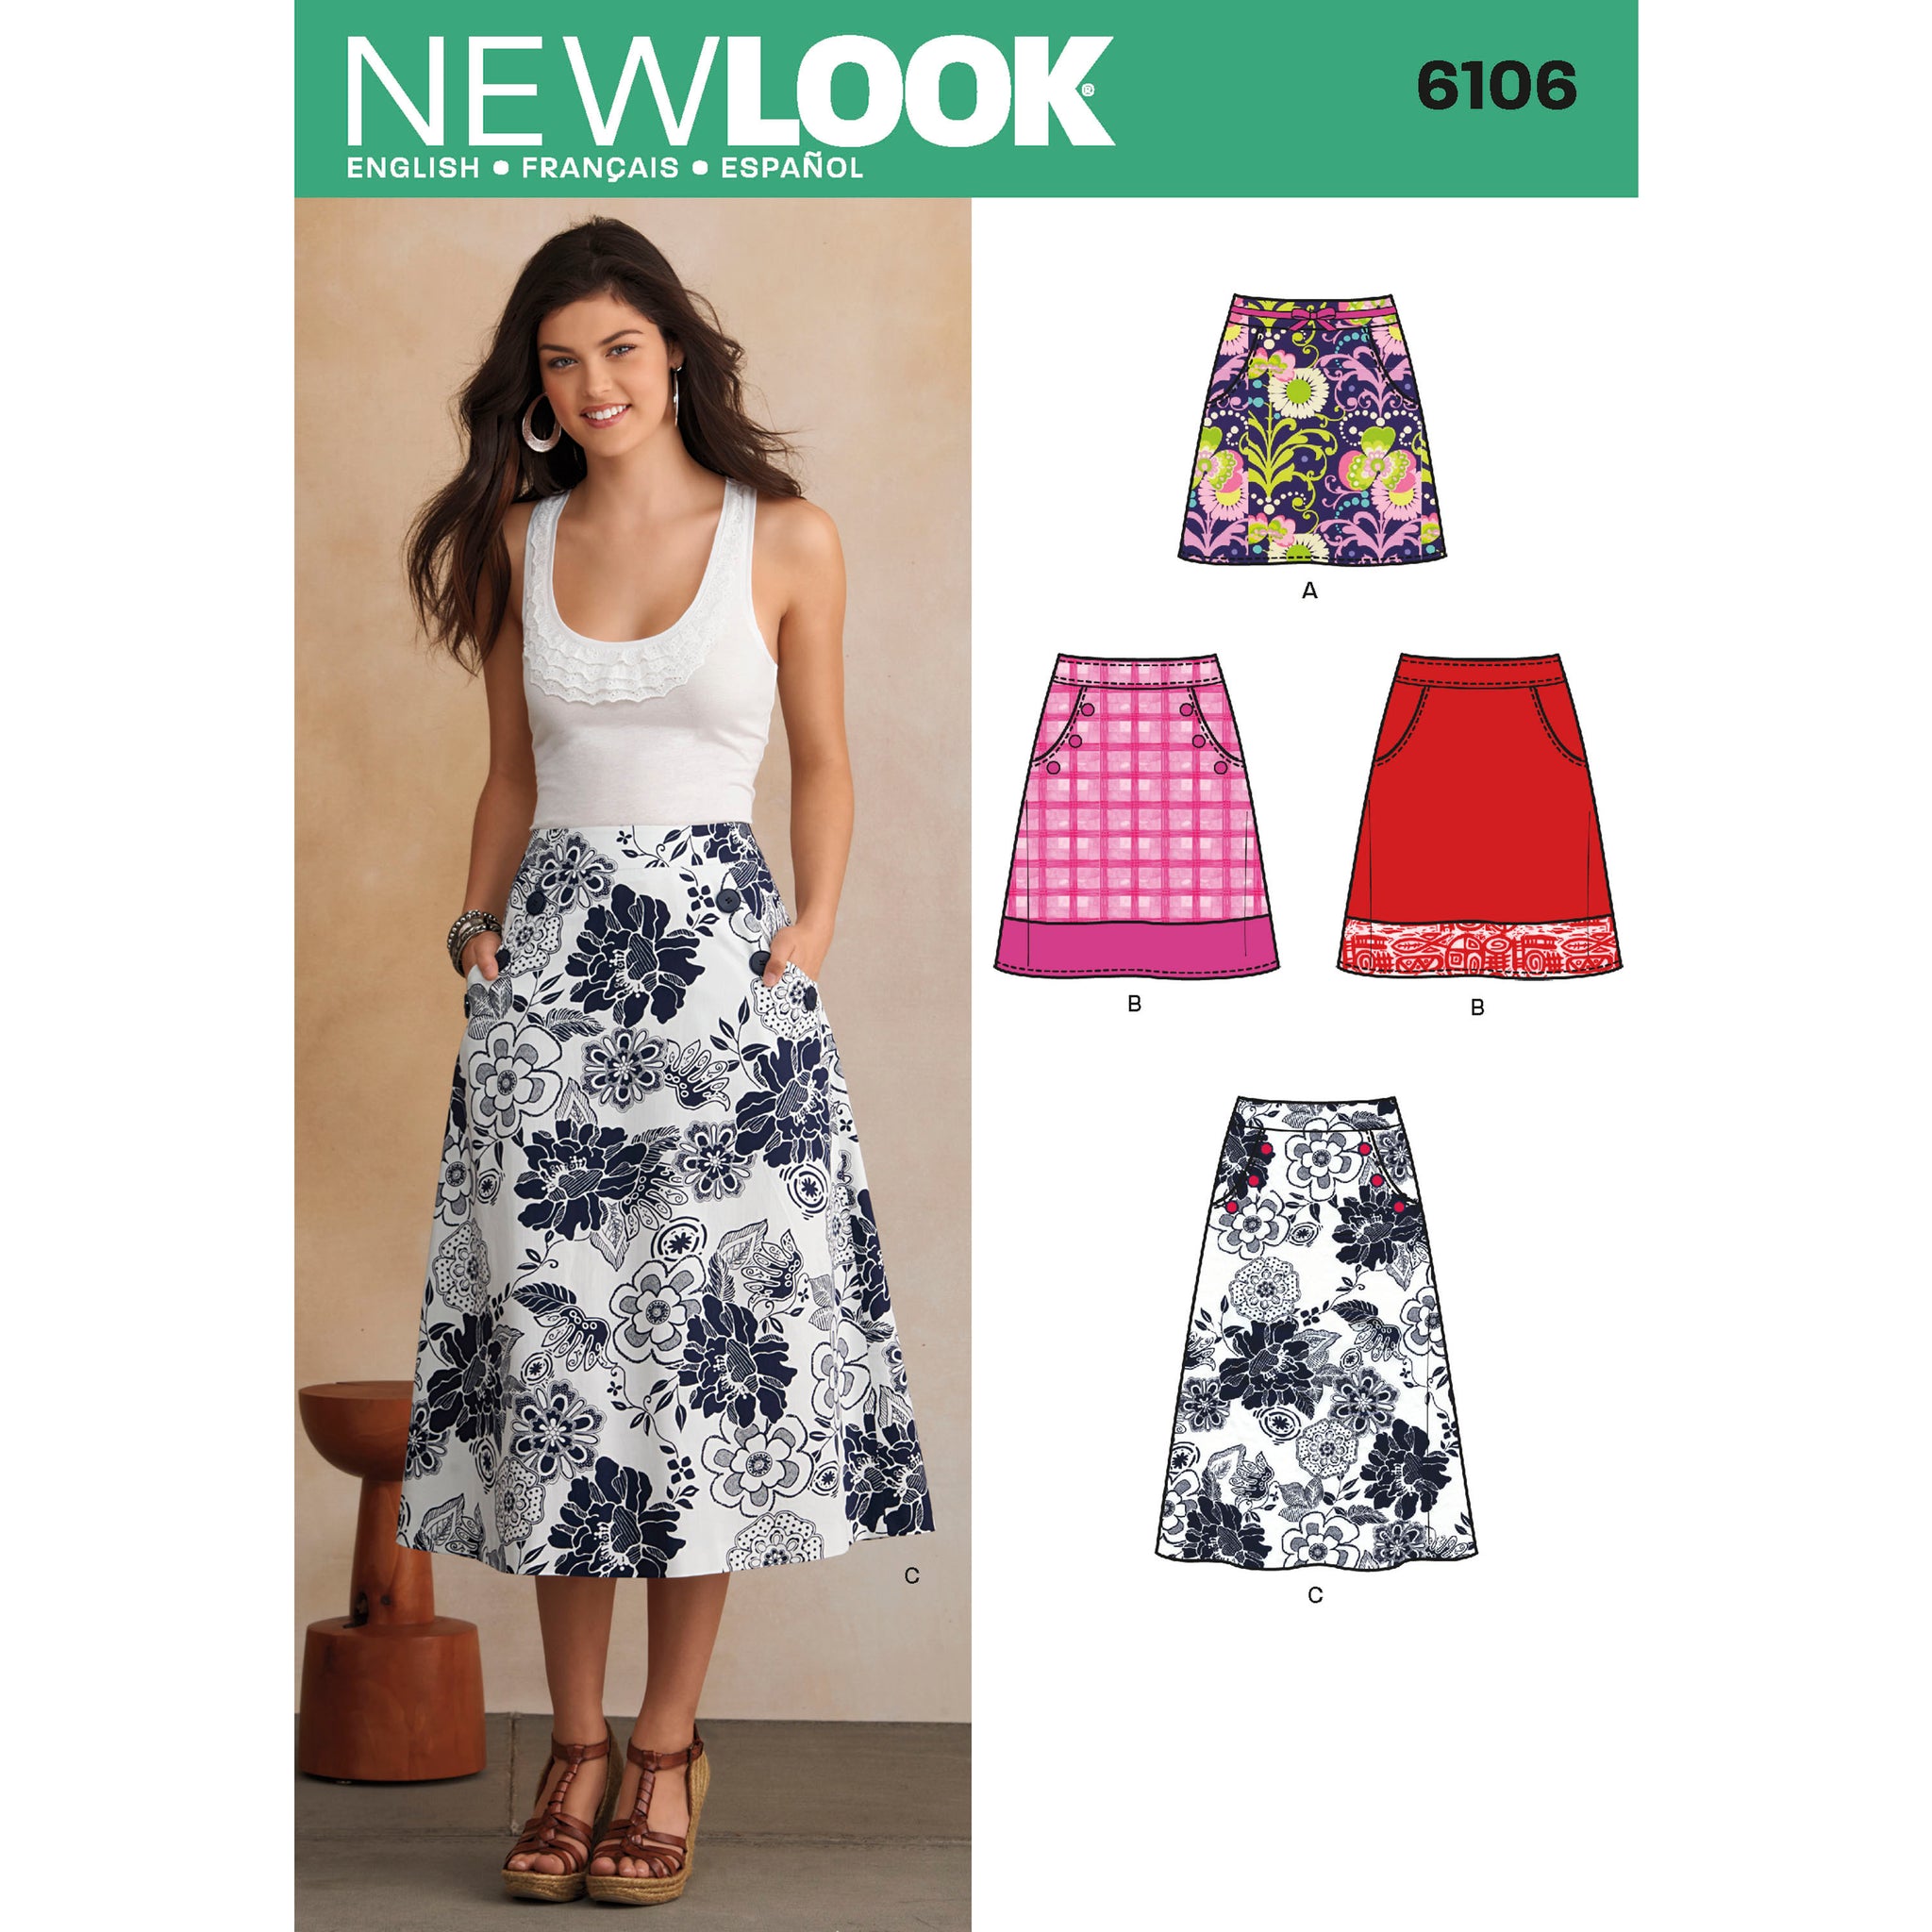 New Look Sewing Pattern 6106 – Pound Fabrics